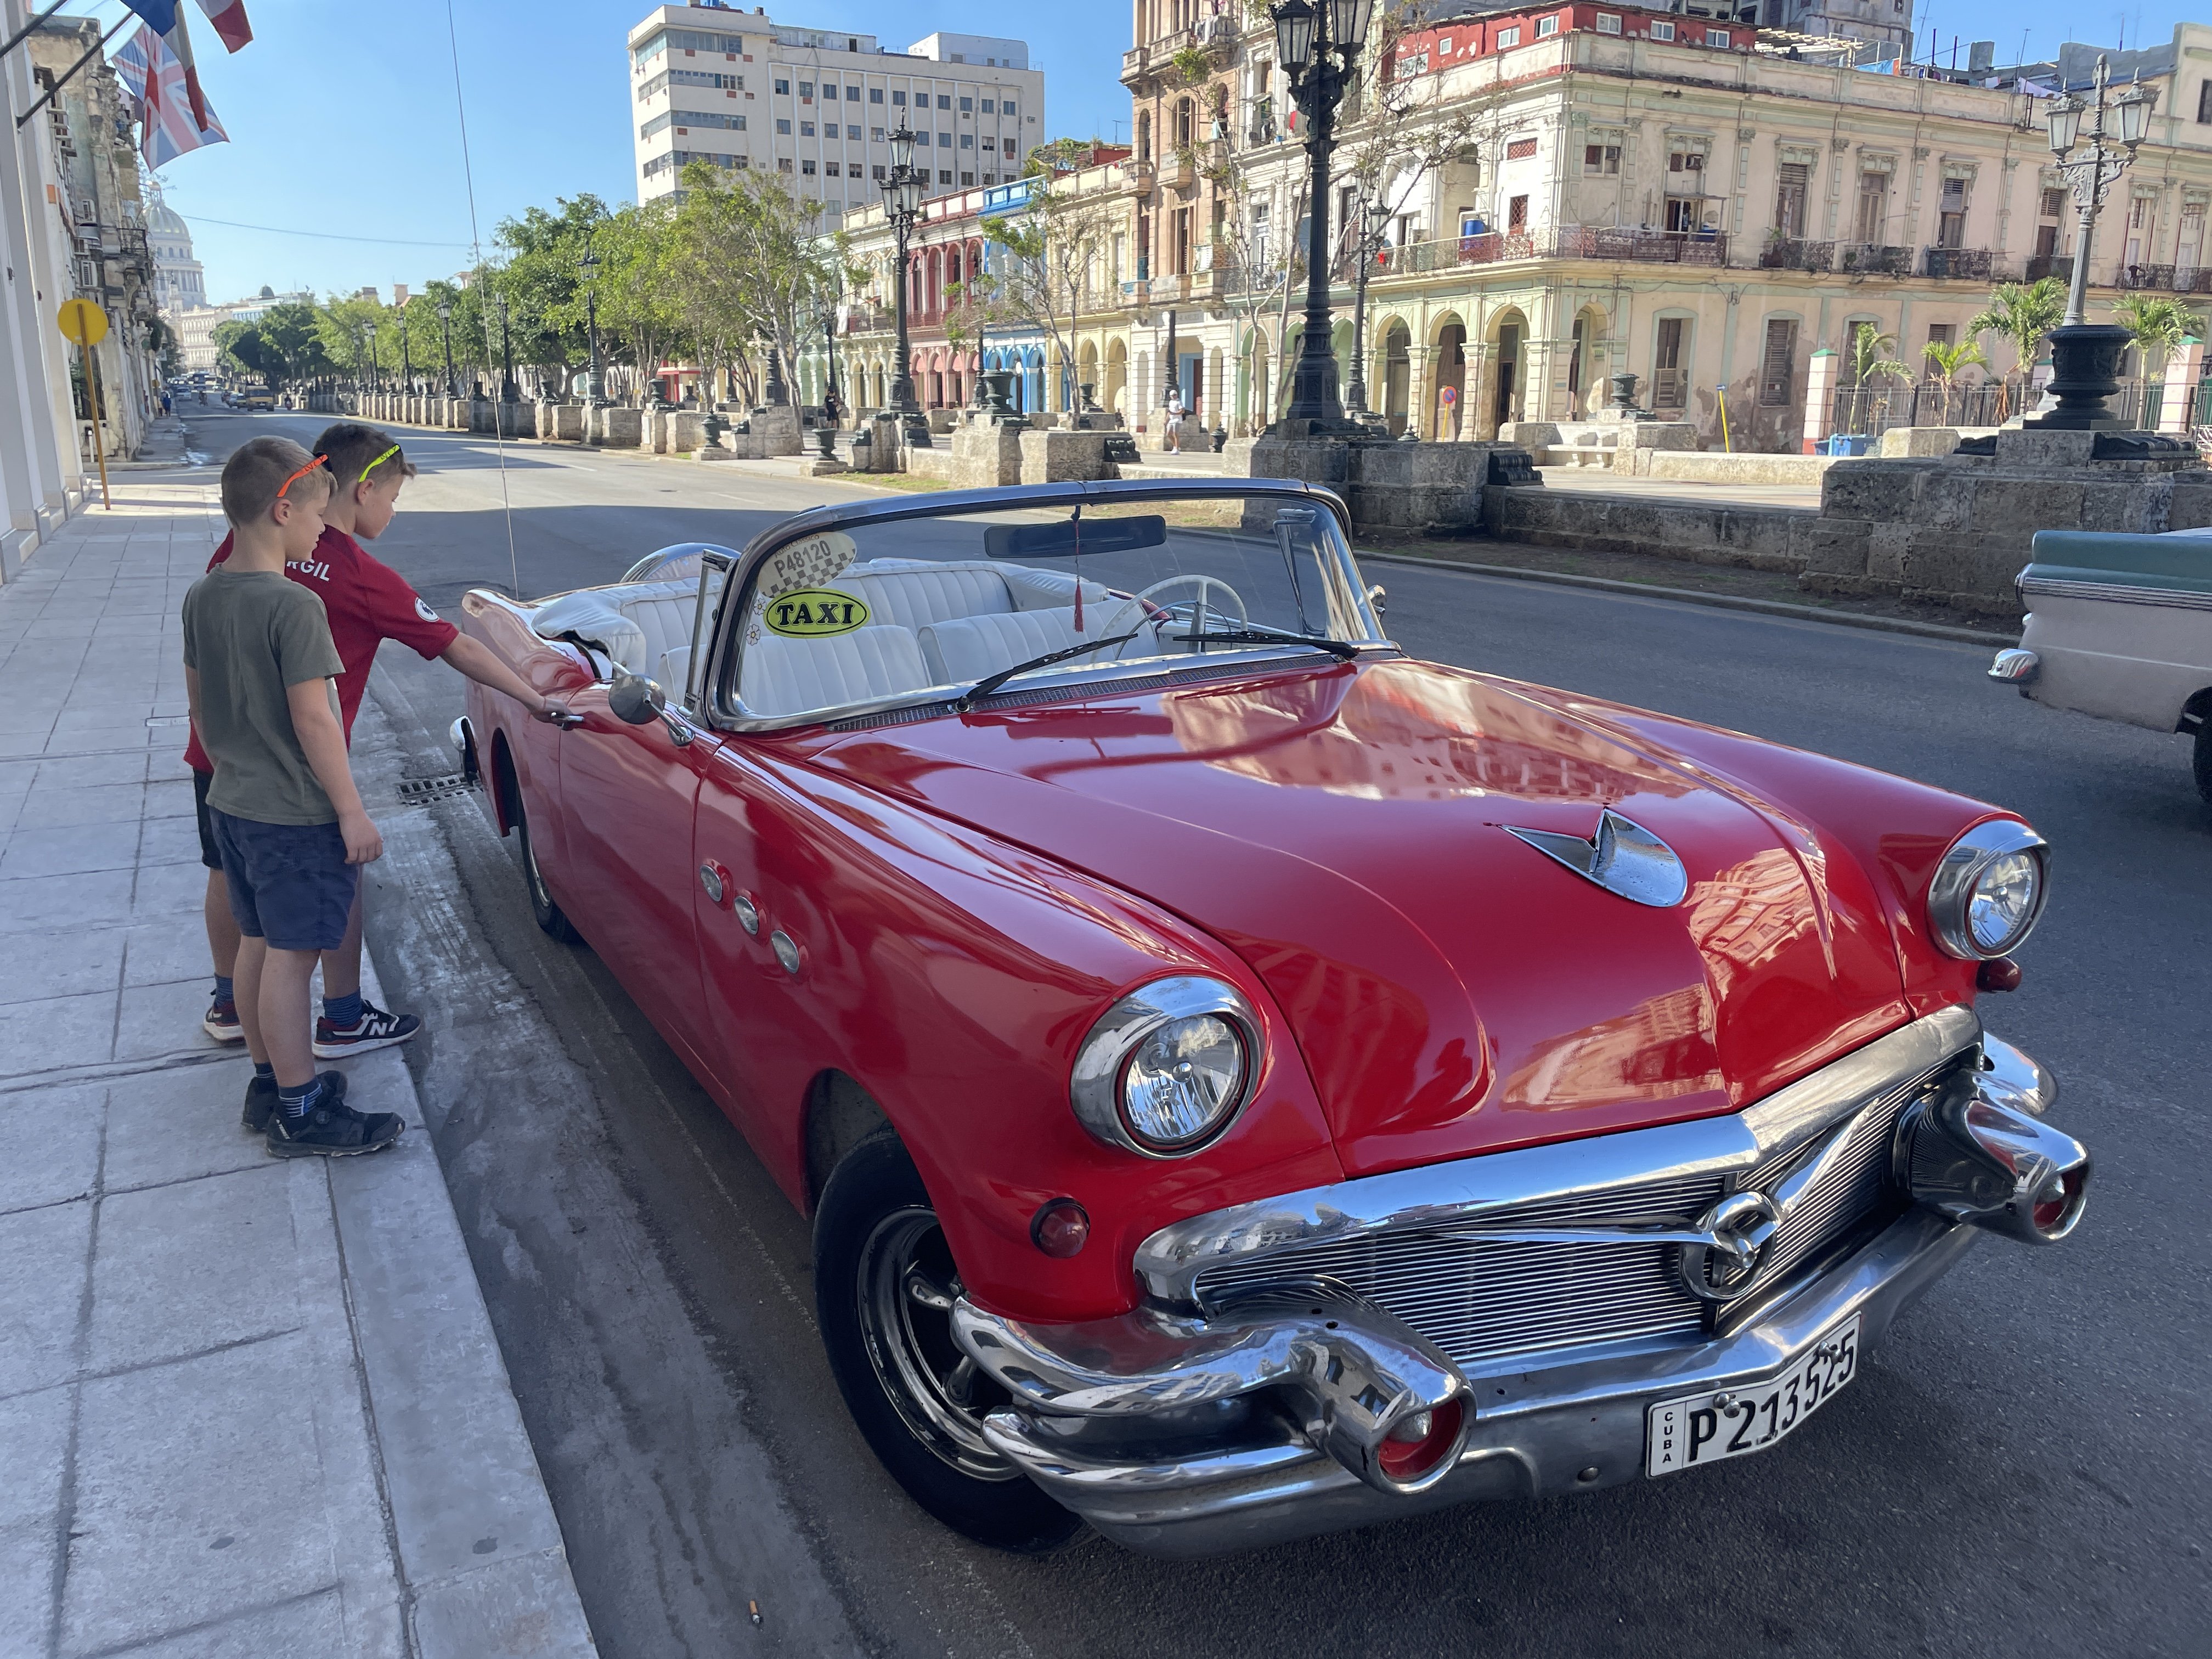 Fernreise mit Kindern - Sichere Fernreiseziele mit Kindern - Kuba